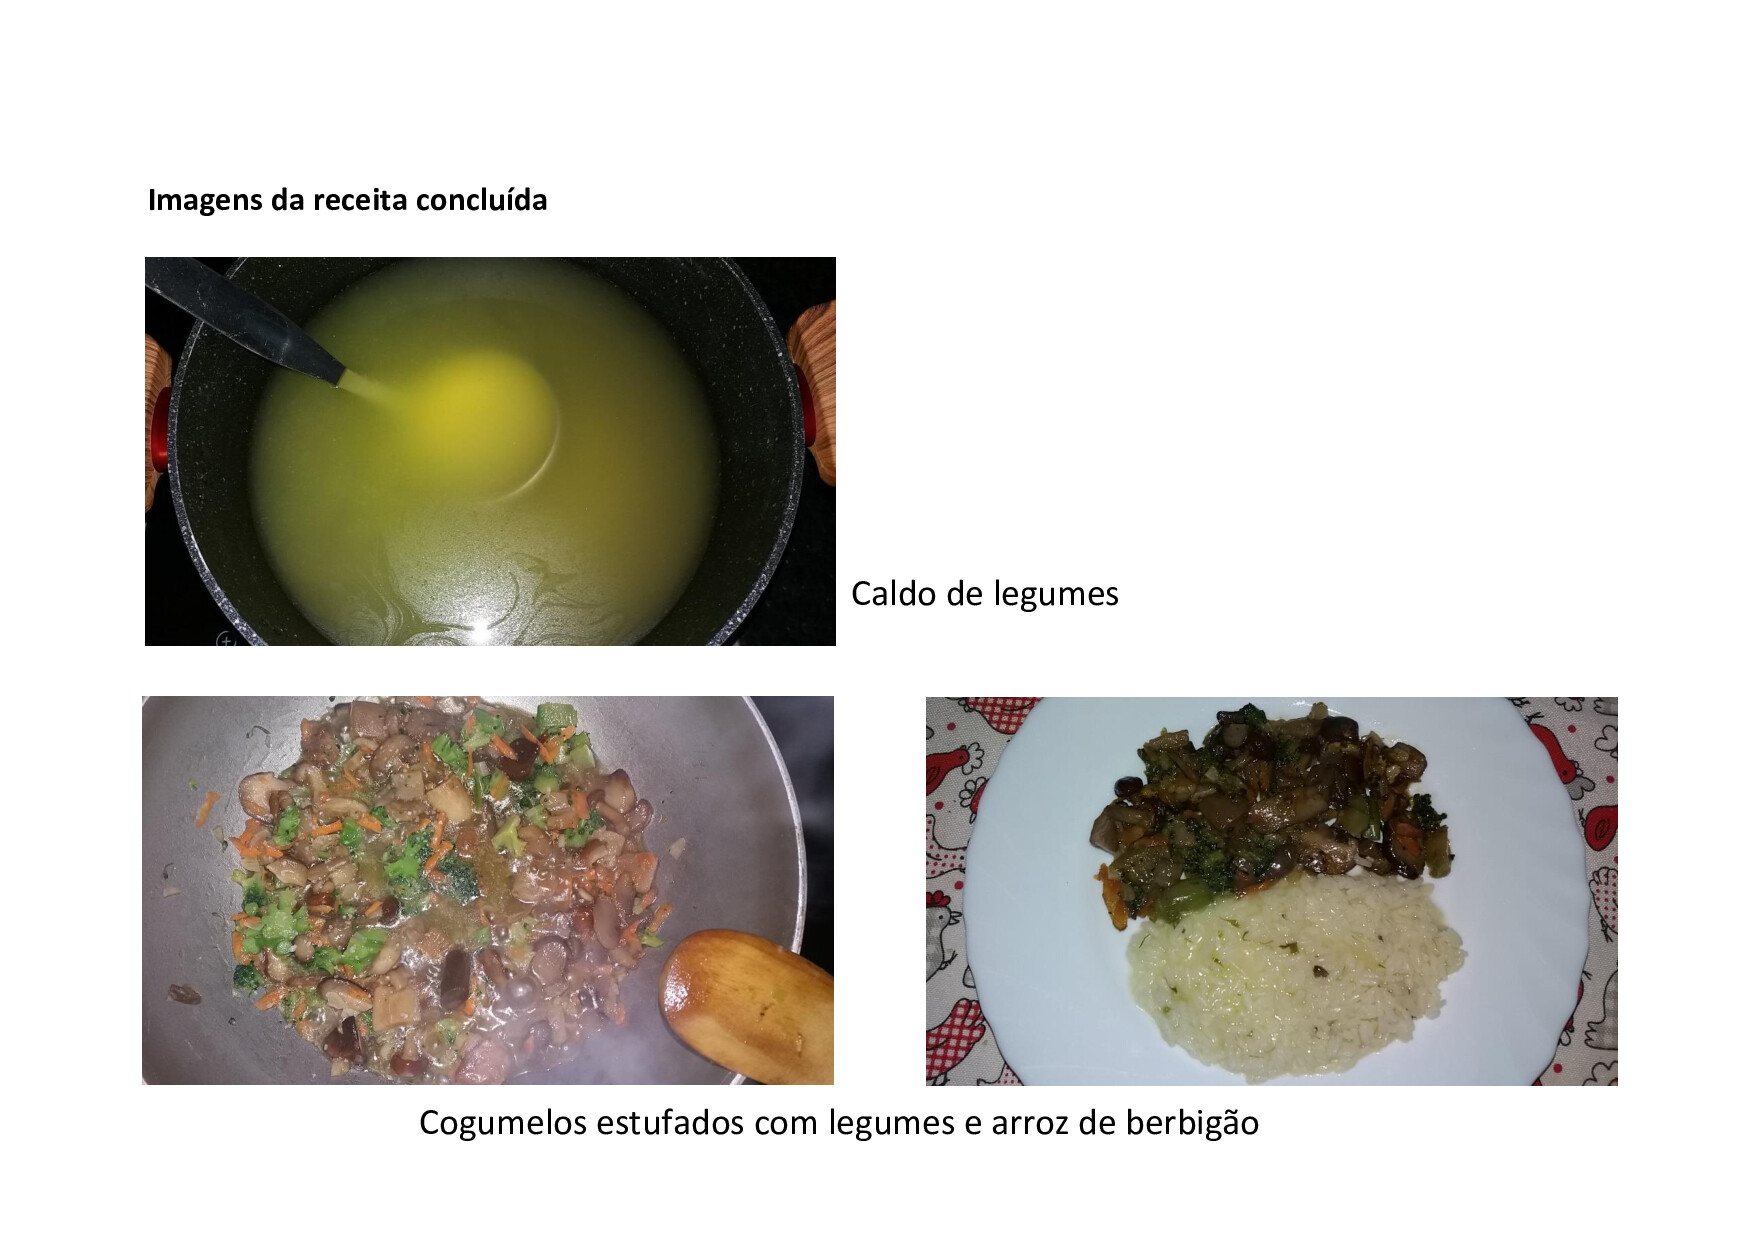 Receita - Cogumelos estufados com legumes e arroz de berbigão<br />
Fotos do prato eleborado pelo aluno